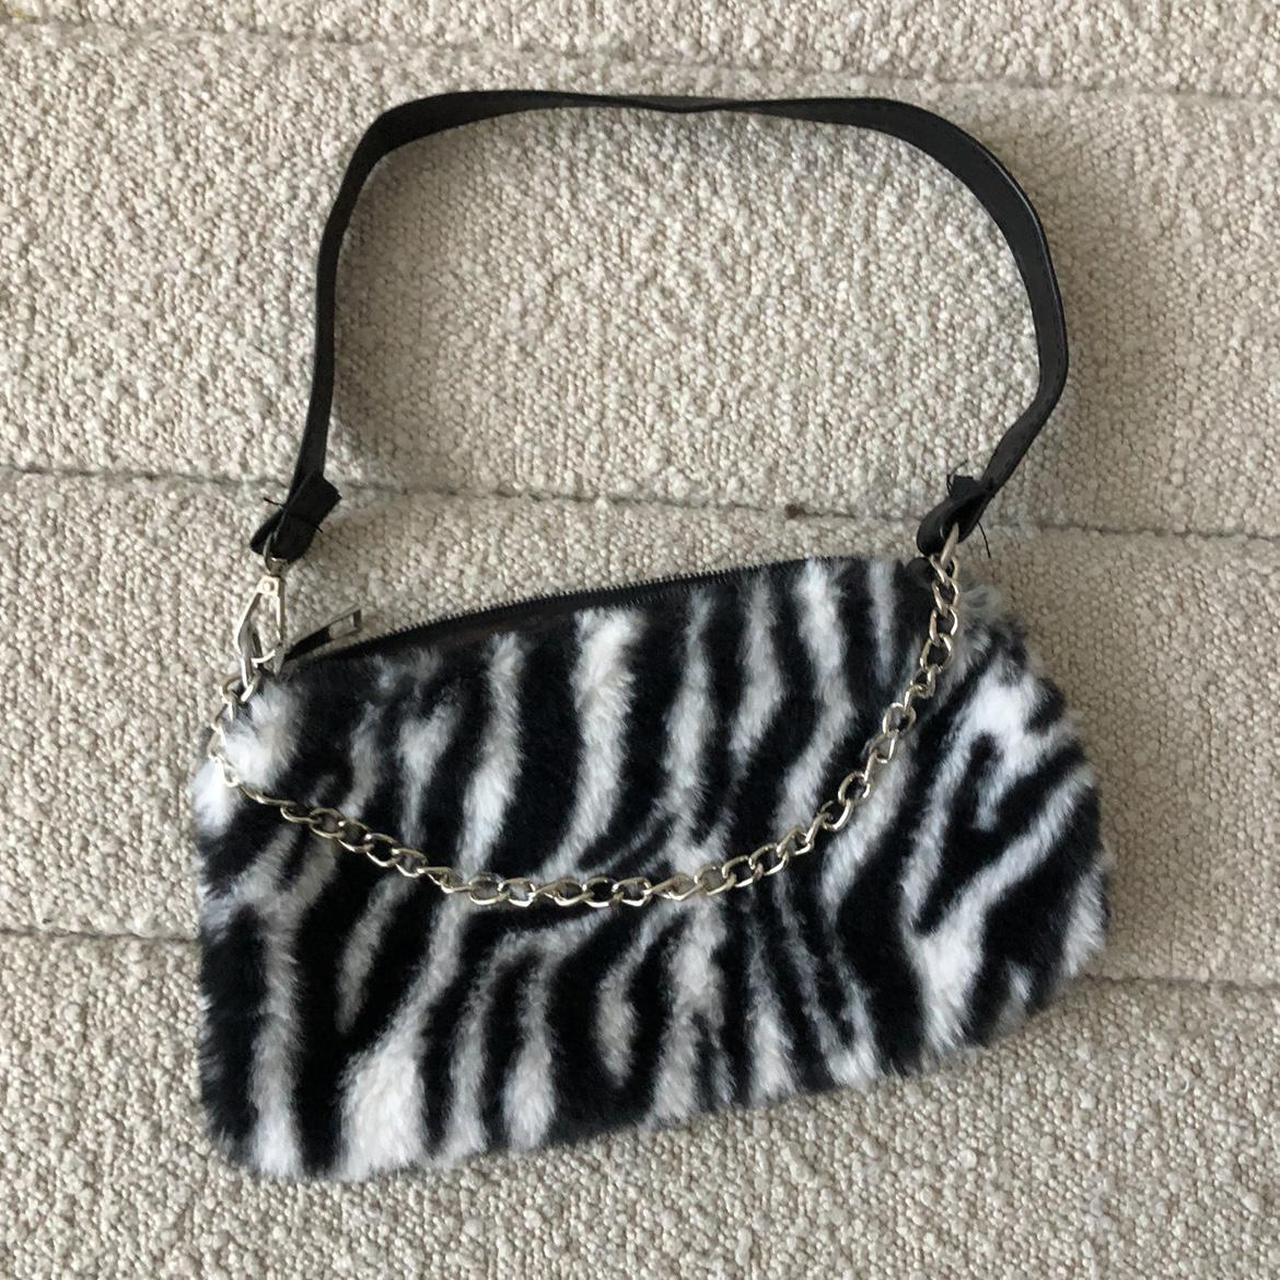 Product Image 3 - Zebra purse